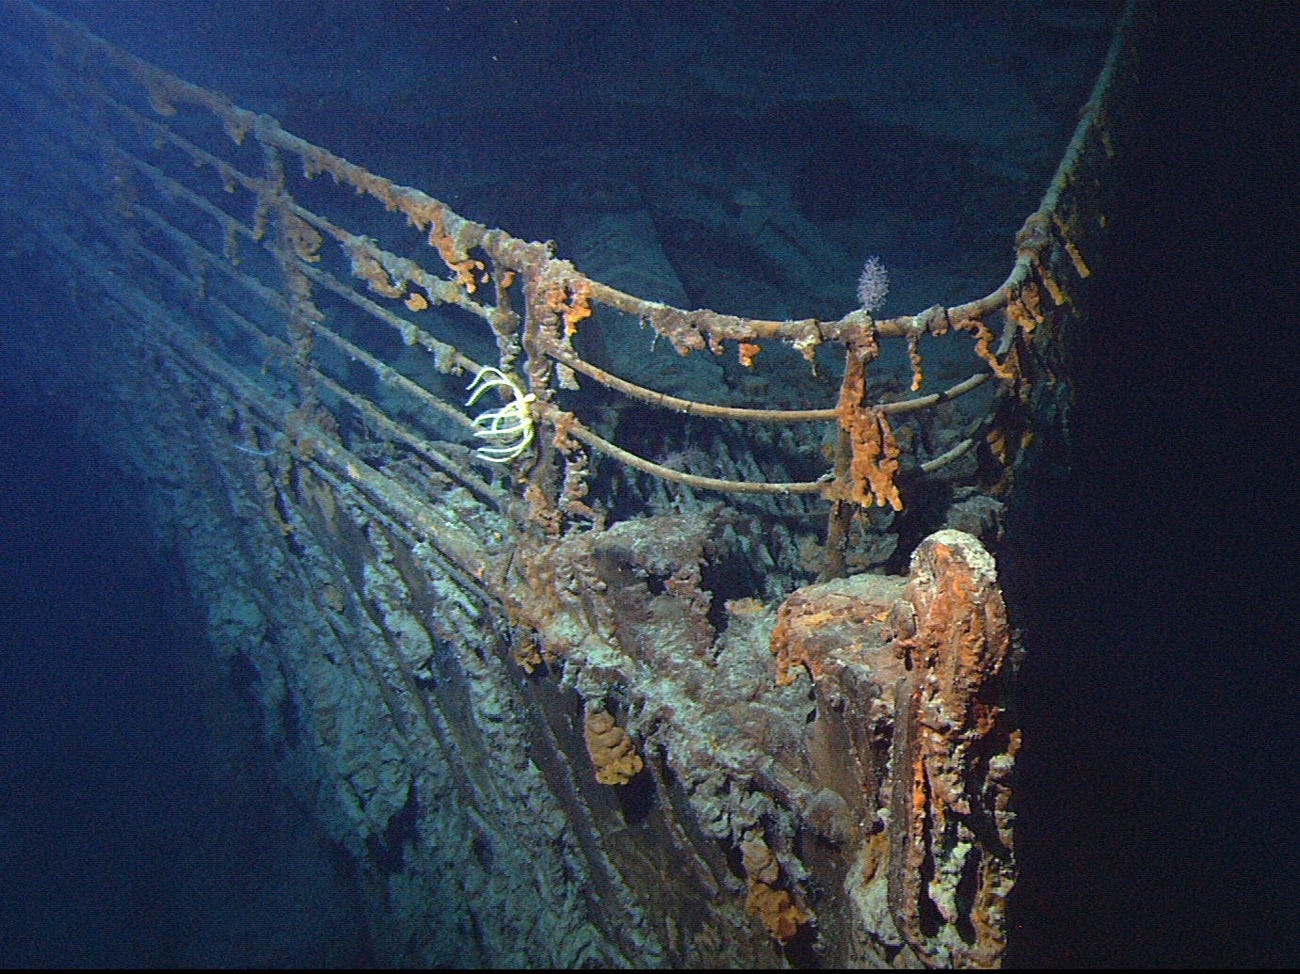 Tại sao xác tàu Titanic vẫn chưa được trục vớt sau 112 năm dù đã xác định được vị trí? Chuyên gia mất 40 năm, dùng công nghệ cao vẫn “bó tay” vì lý do này- Ảnh 2.